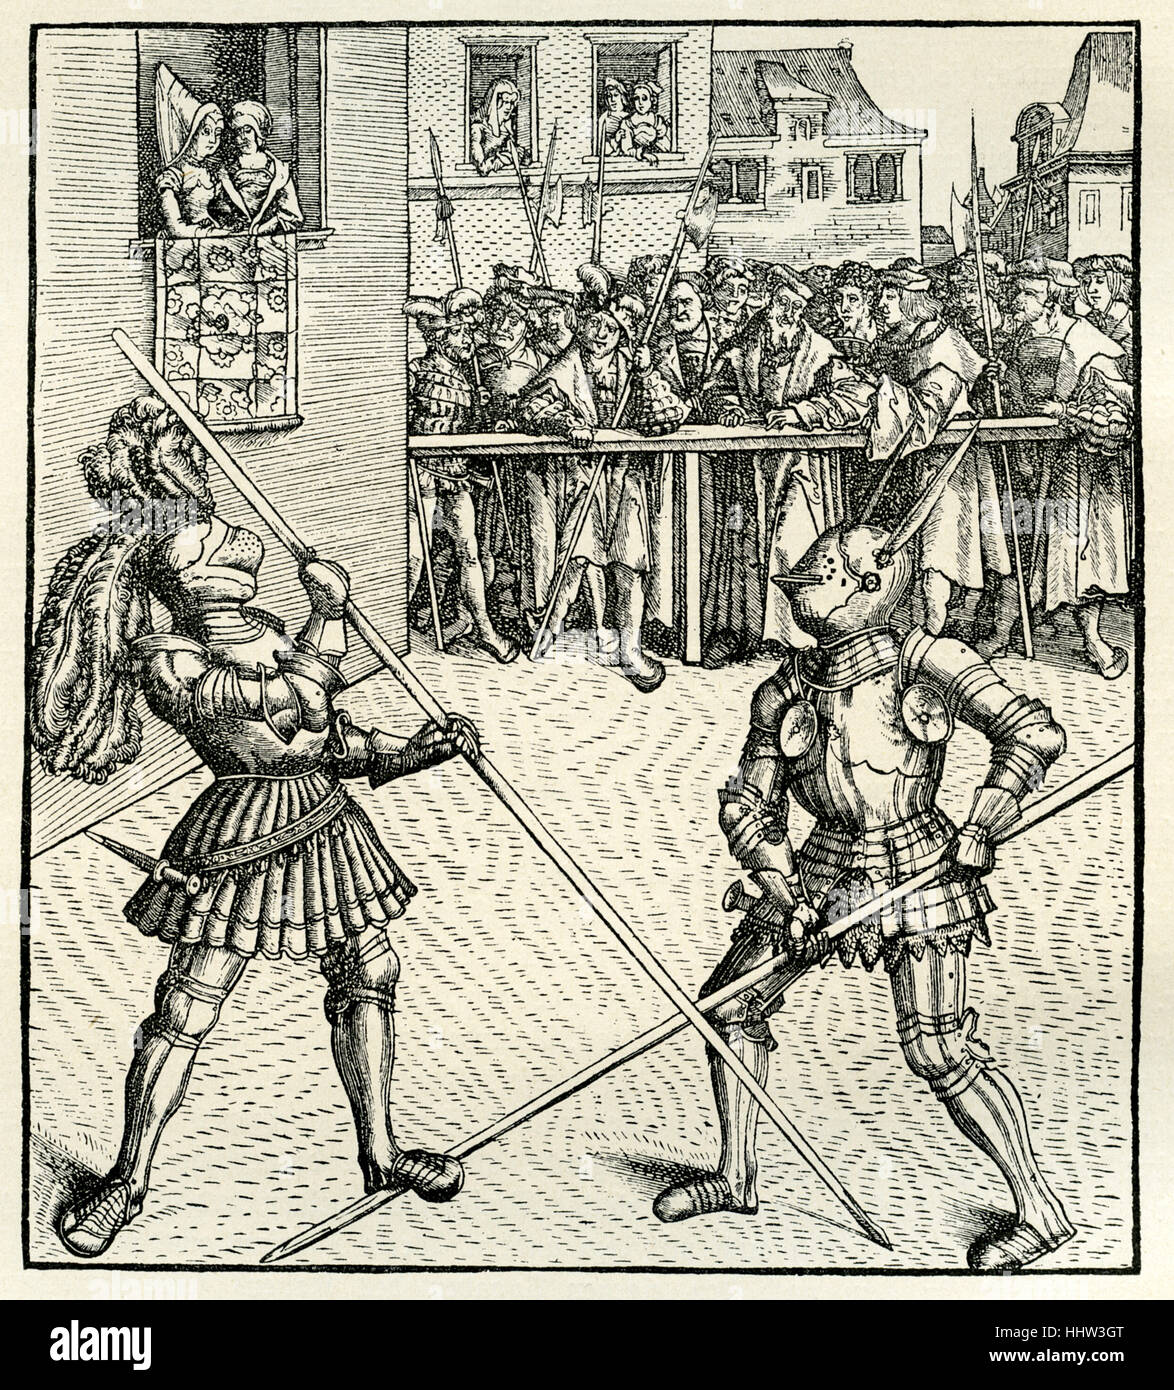 Maximilian I, Heiliger römischer Kaiser (22 März 1459 – 12 Januar 1519) konkurrieren in einem Turnier mit Lanzen bekämpfen. Holzschnitt Stockfoto